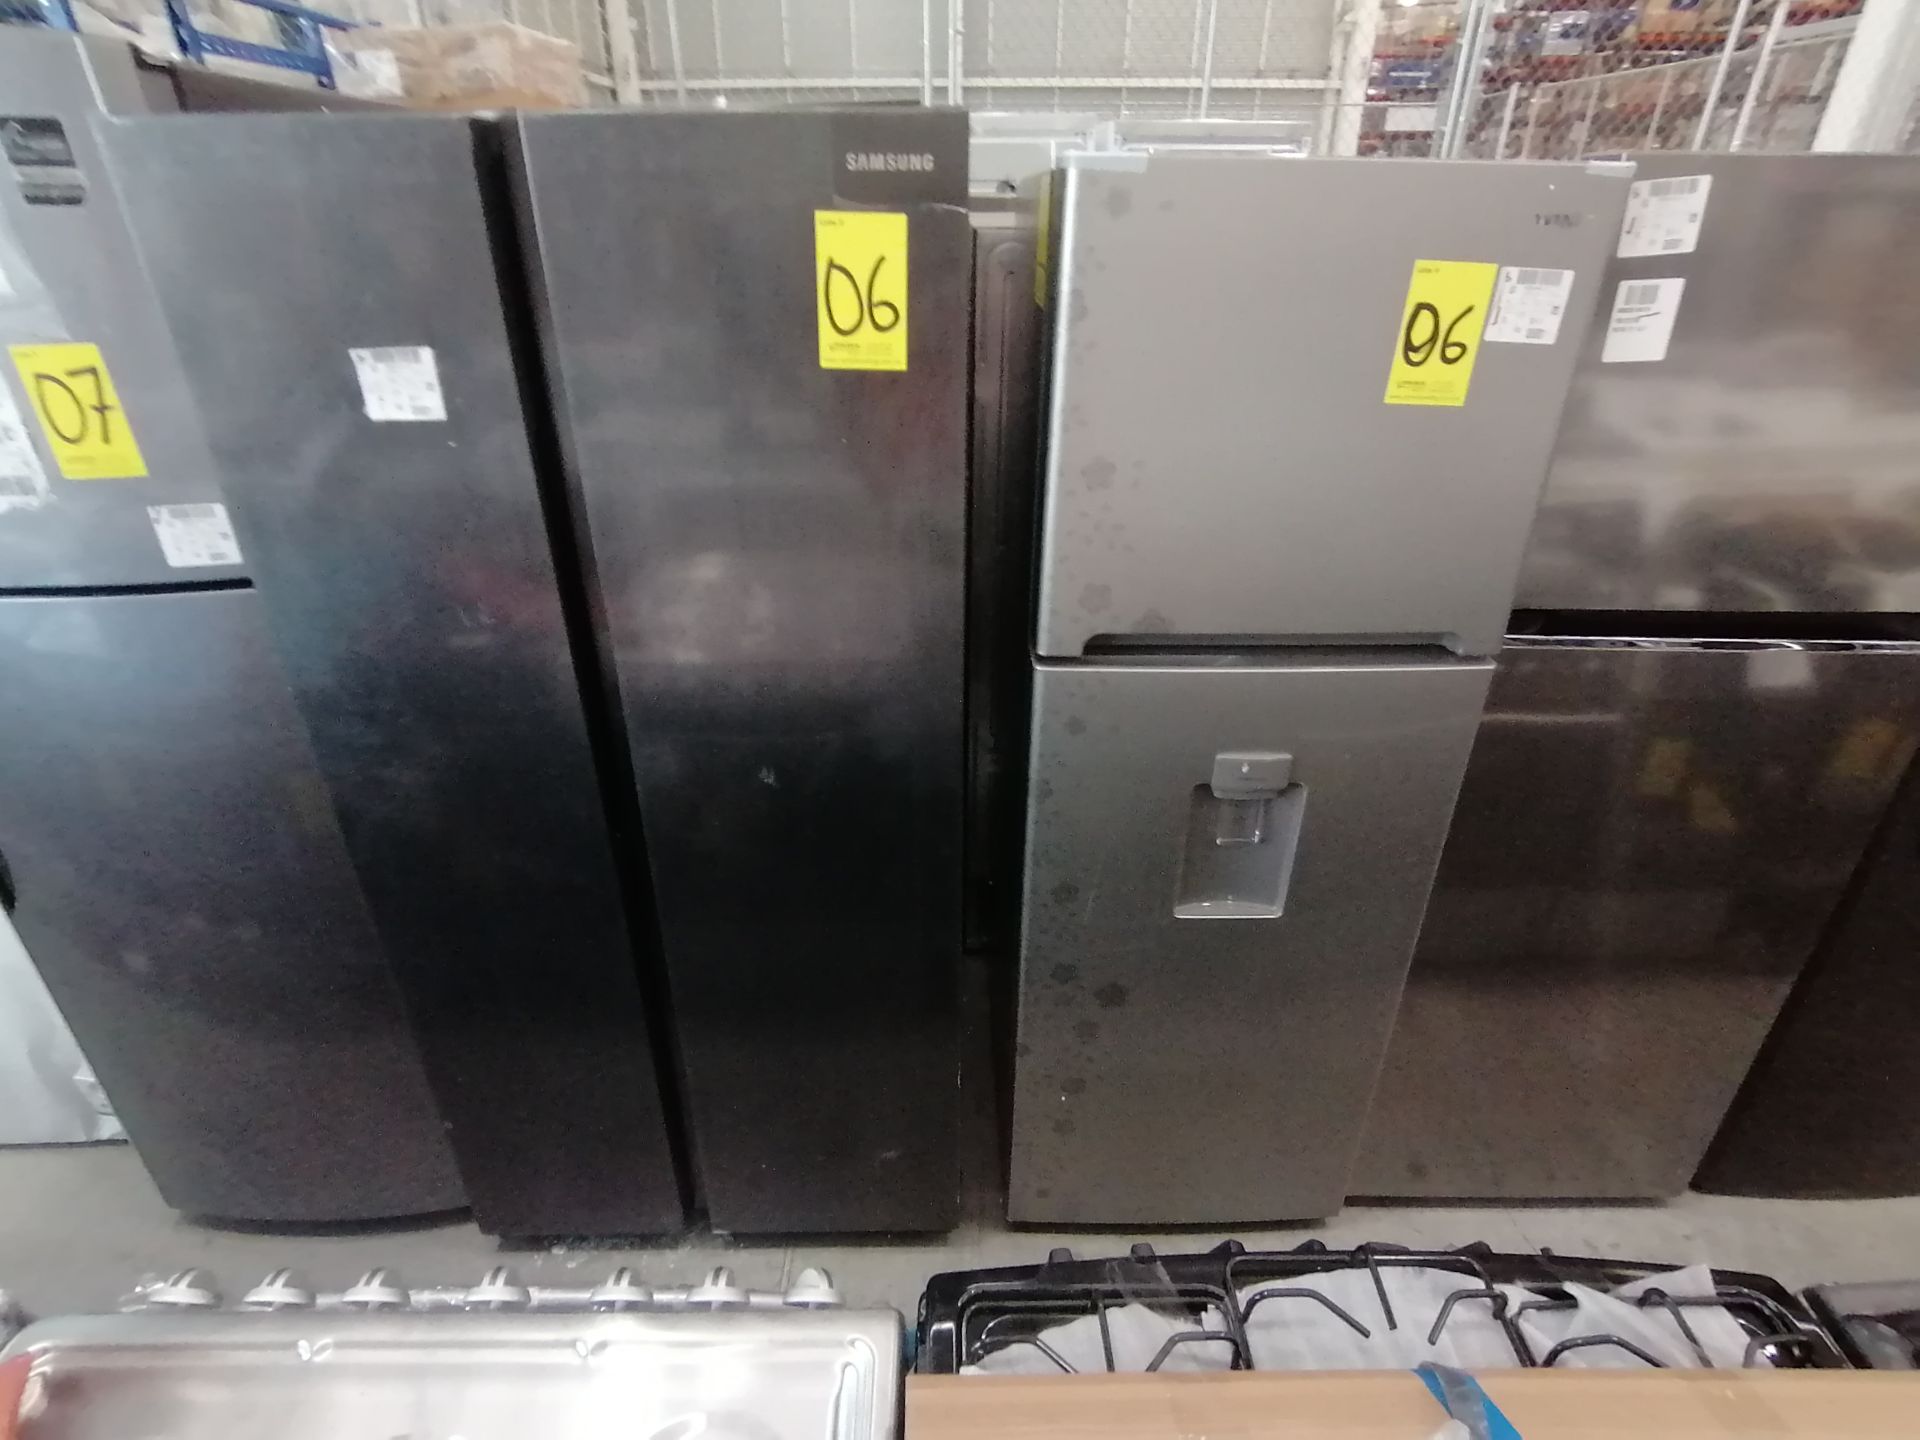 1 Refrigerador Marca Samsung, Modelo RS28T5B00B1, Serie 0B2V4BBT300531L, Color Gris, Golpeado, Favo - Image 5 of 17